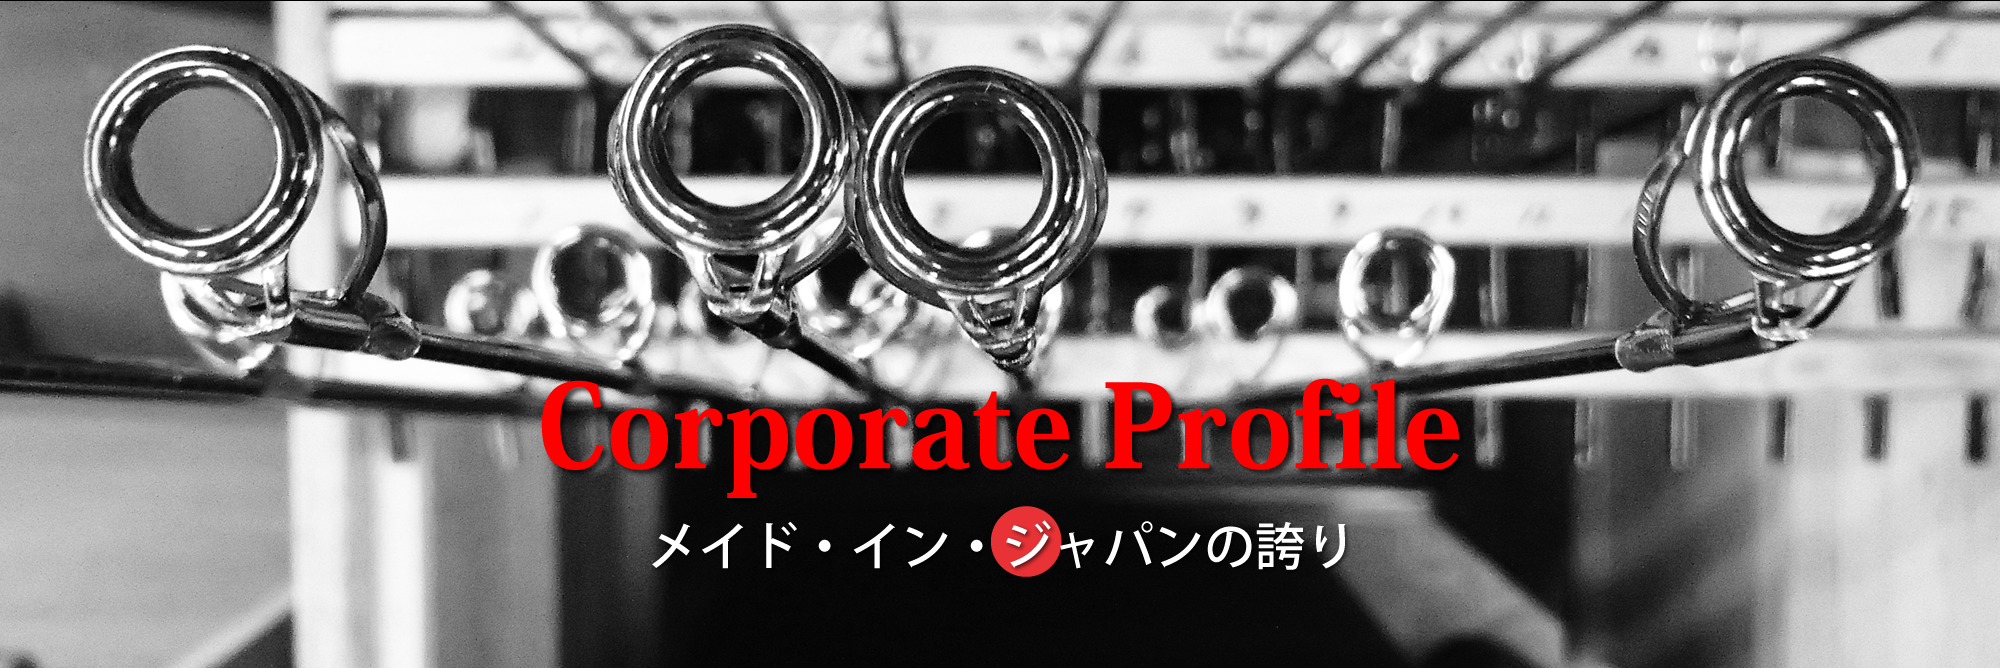 Corporate Profile メイド・イン・ジャパンの誇り